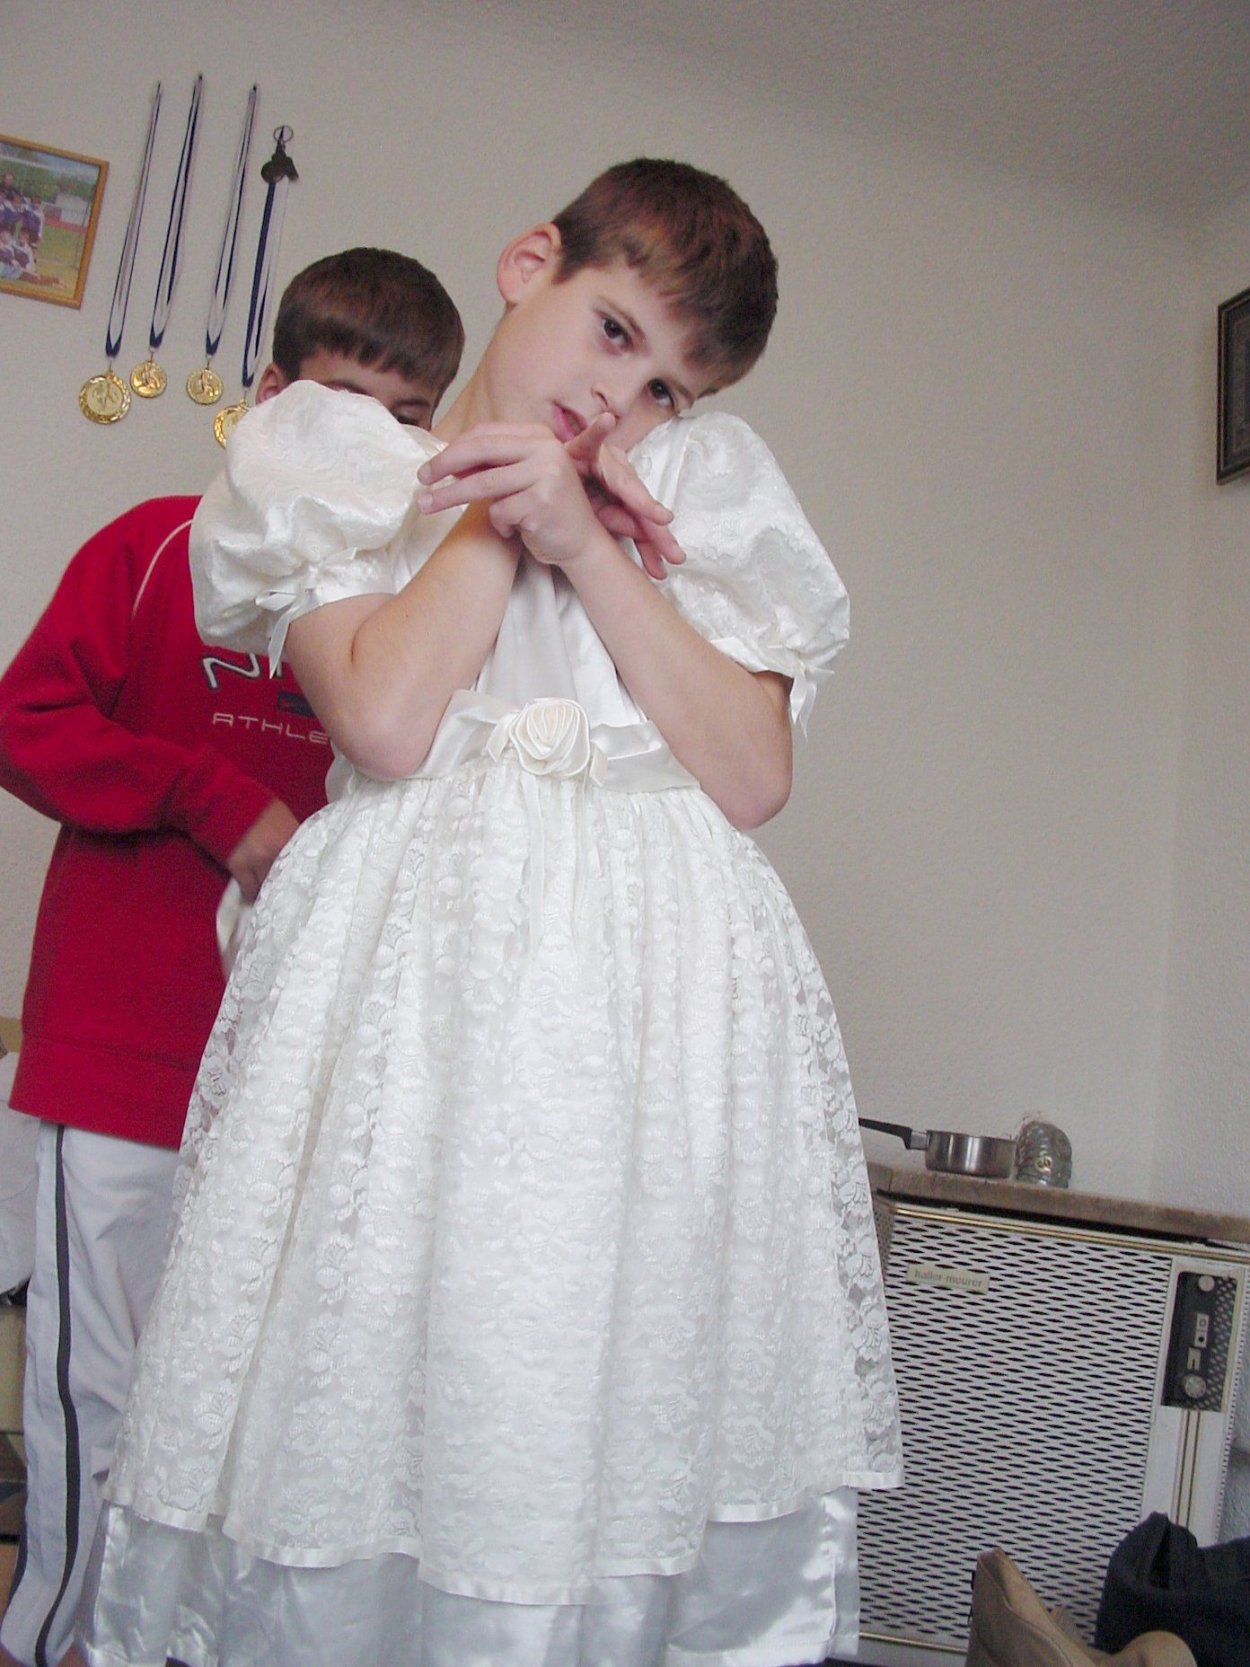 Мама друга в платье. Мальчика переодели в платье. Мальчик в свадебном платье. Мальчик одевает платье. Мальчики одетые в платья.